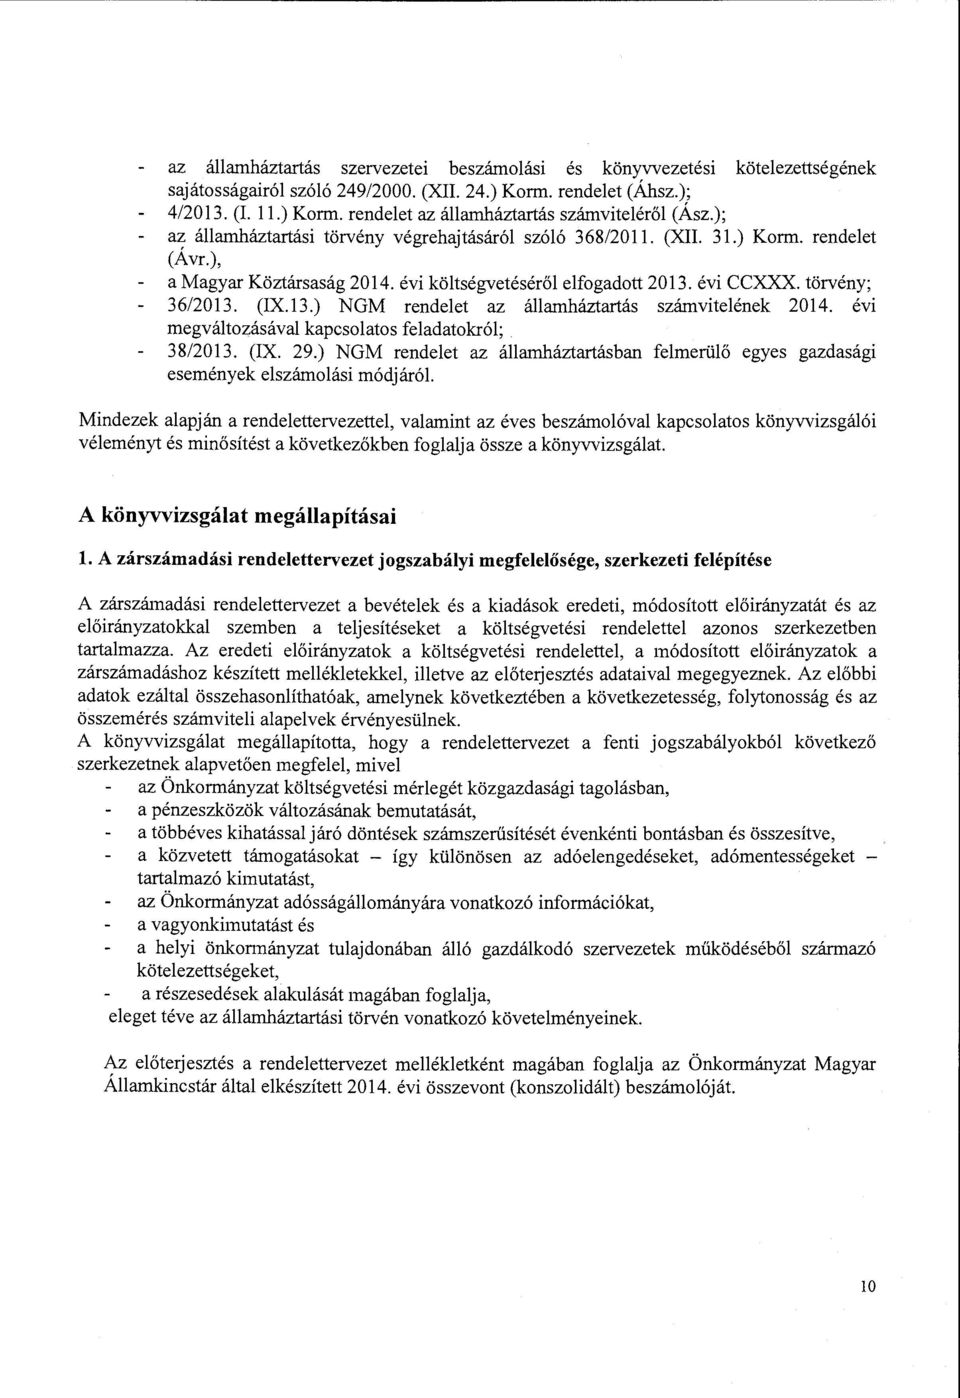 ), a Magyar Köztársaság 2014. évi költségvetéséről elfogadott 2013. évi CCXXX. törvény; 36/2013. (IX.13.) NGM rendelet az államháztartás számvitelének 2014.